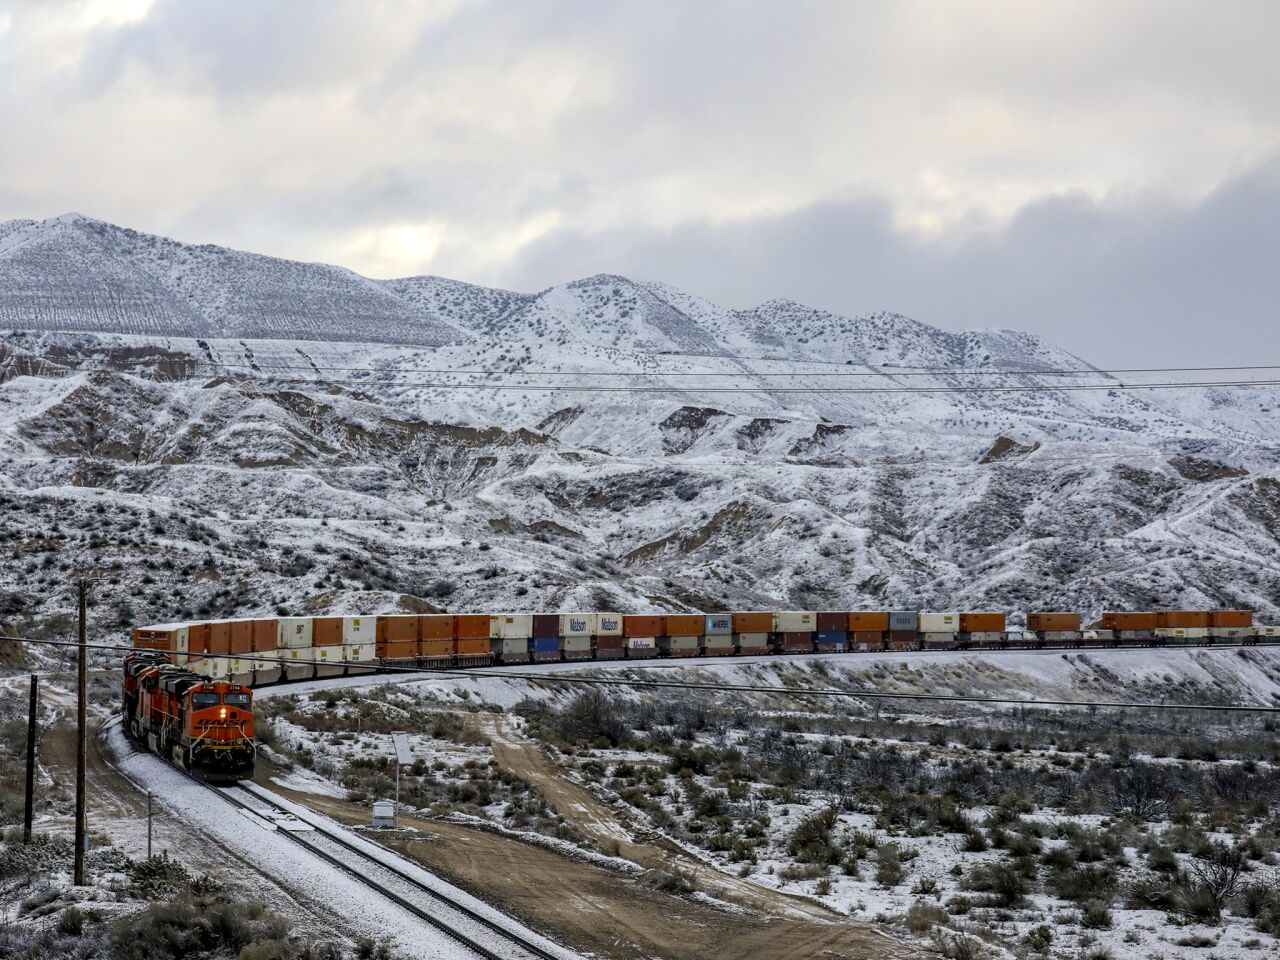 A freight train travels through snowy mountains near the Cajon Pass.